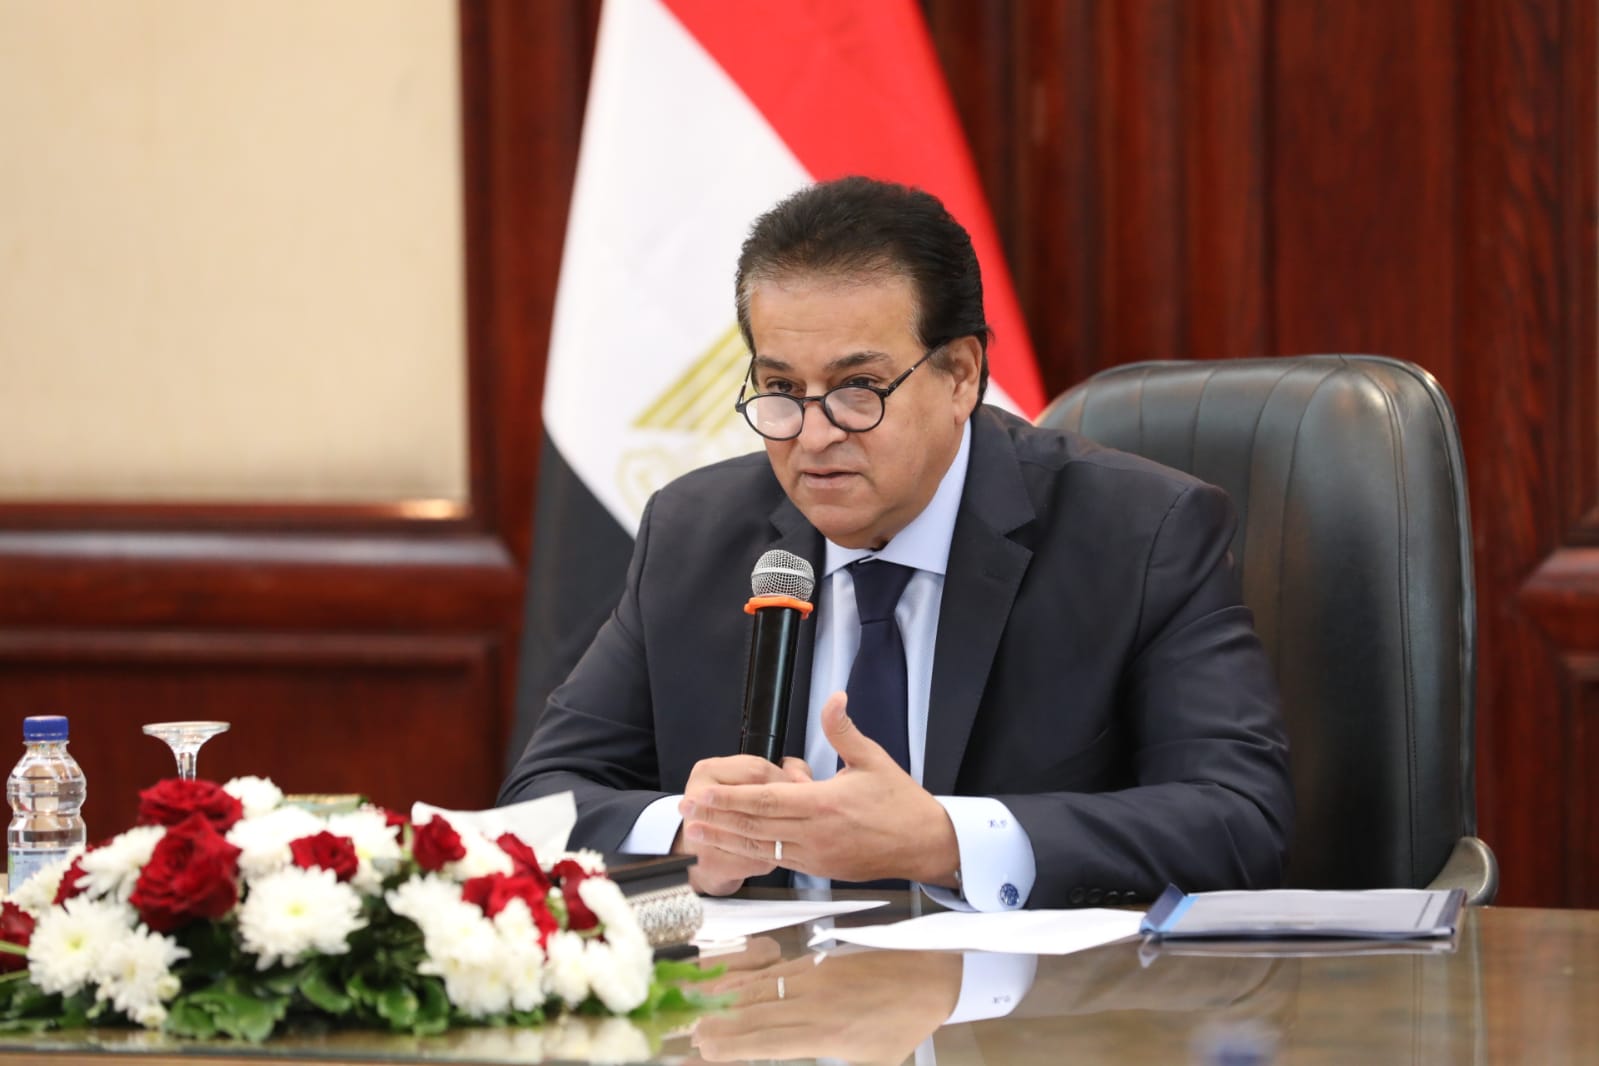 التعديل الوزاري  خالد عبد الغفار وزير الصحة والسكان الجديد| السيرة الذاتية 